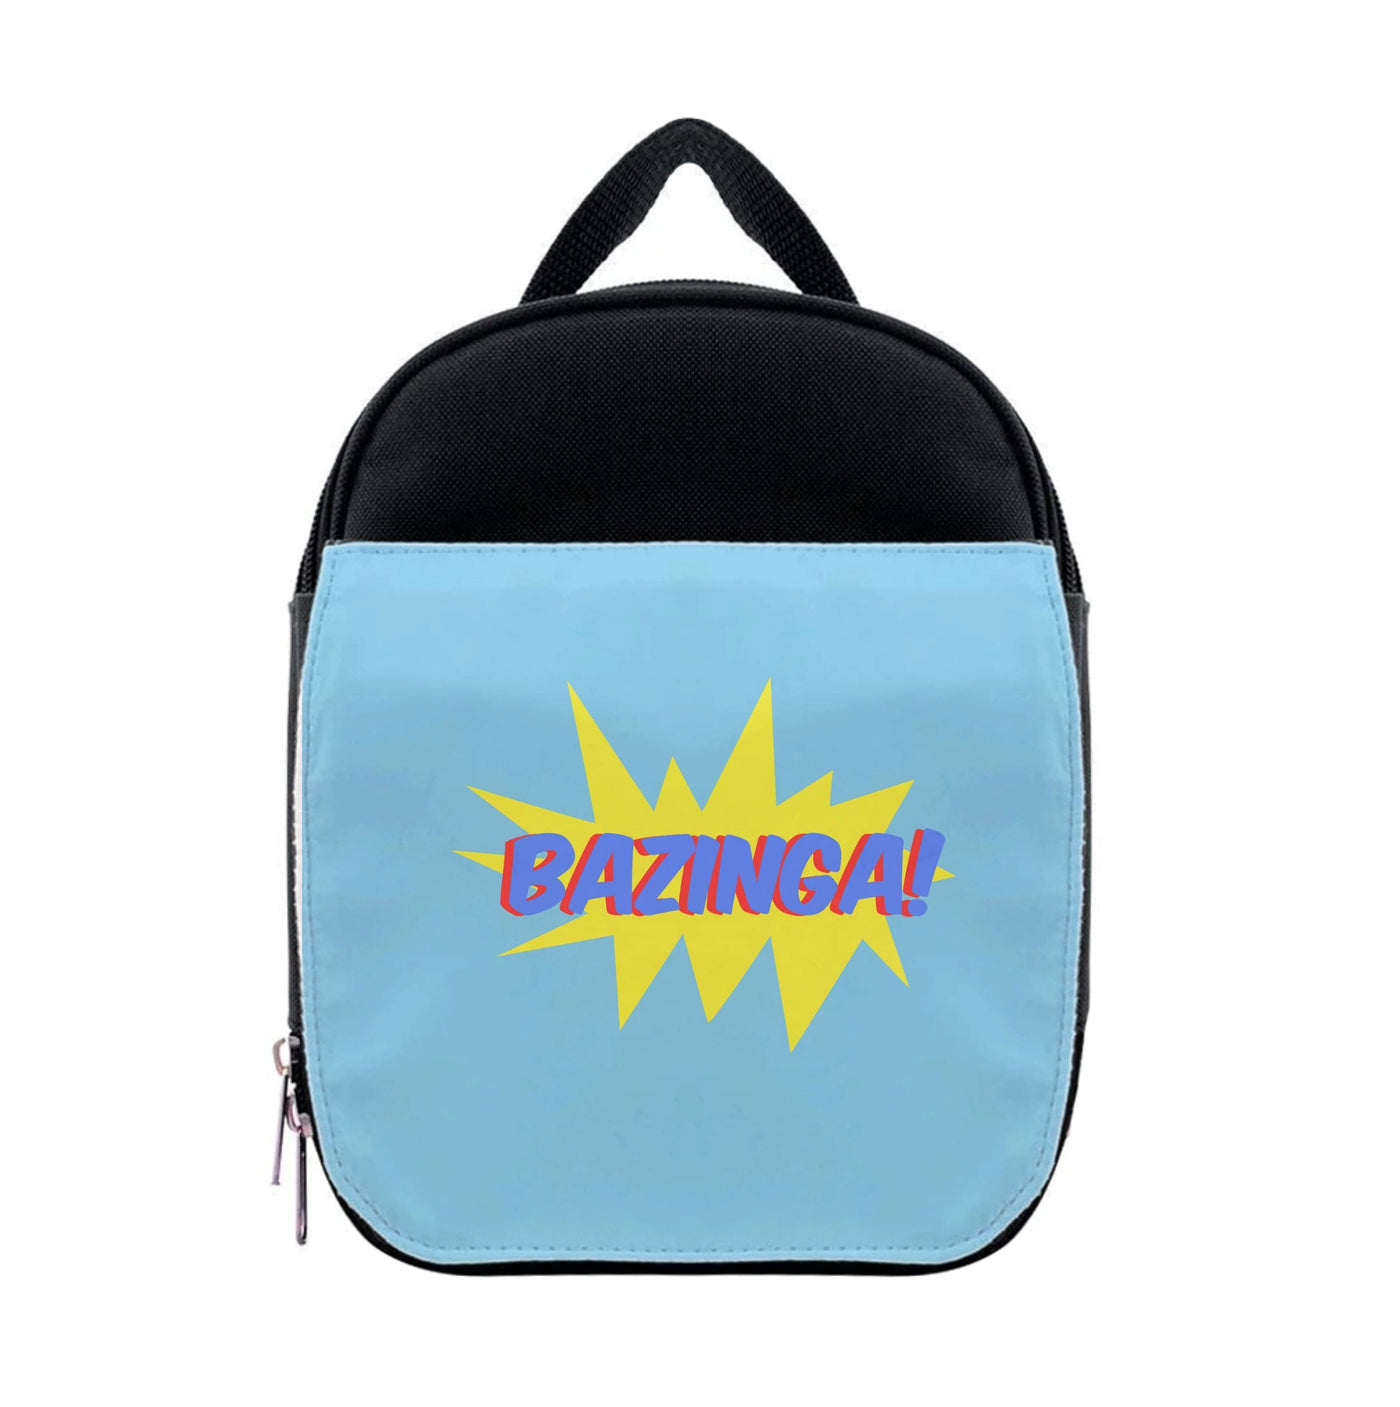 Bazinga! - TV Quotes Lunchbox